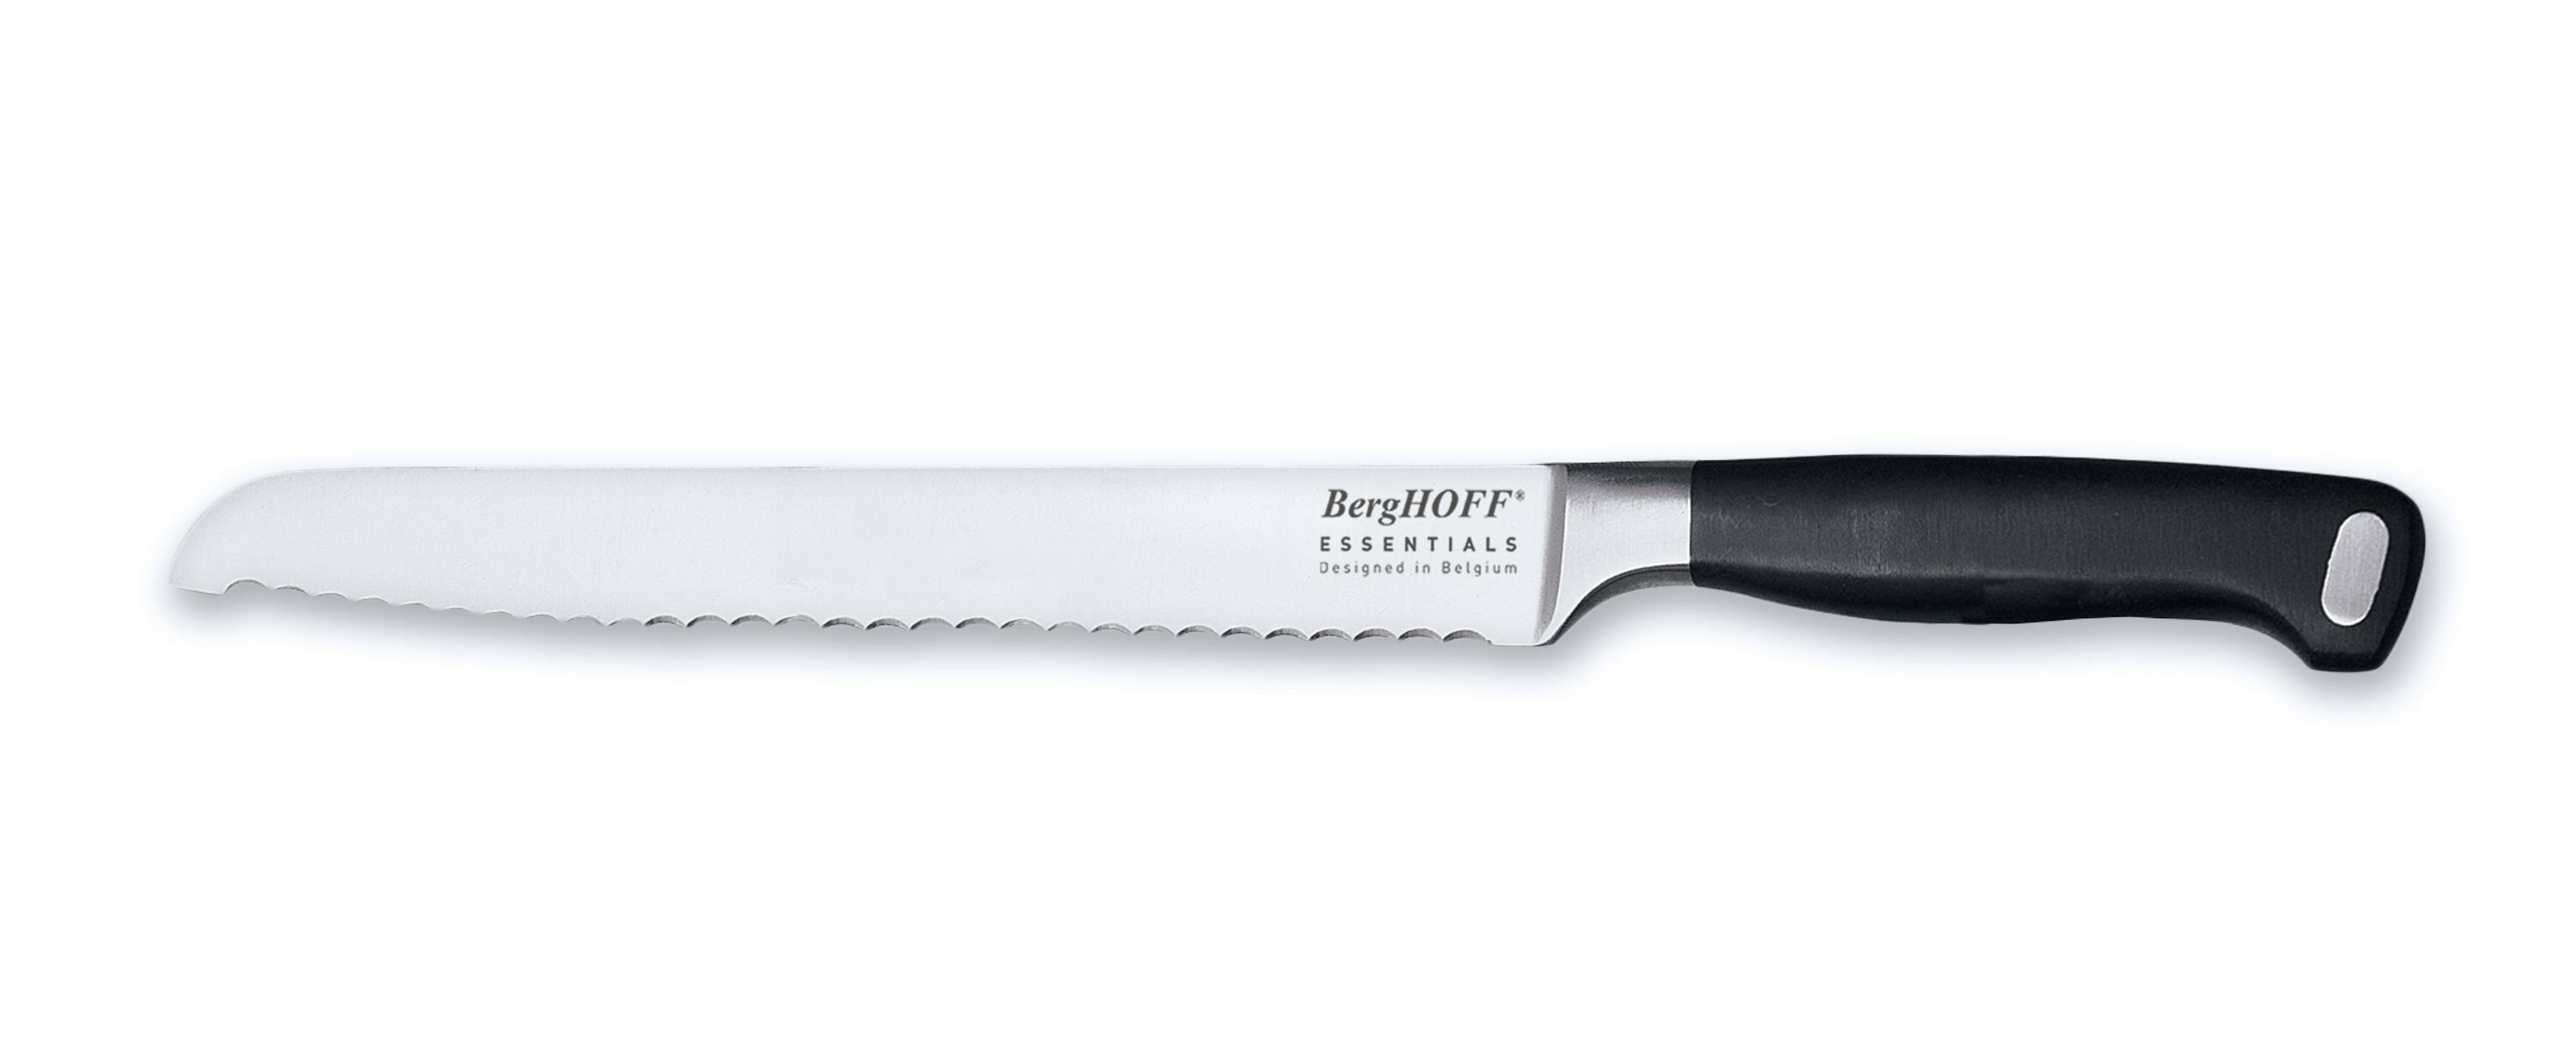 https://assets.wfcdn.com/im/69025104/compr-r85/1031/103139663/berghoff-international-essentials-9-stainless-steel-bread-knife.jpg